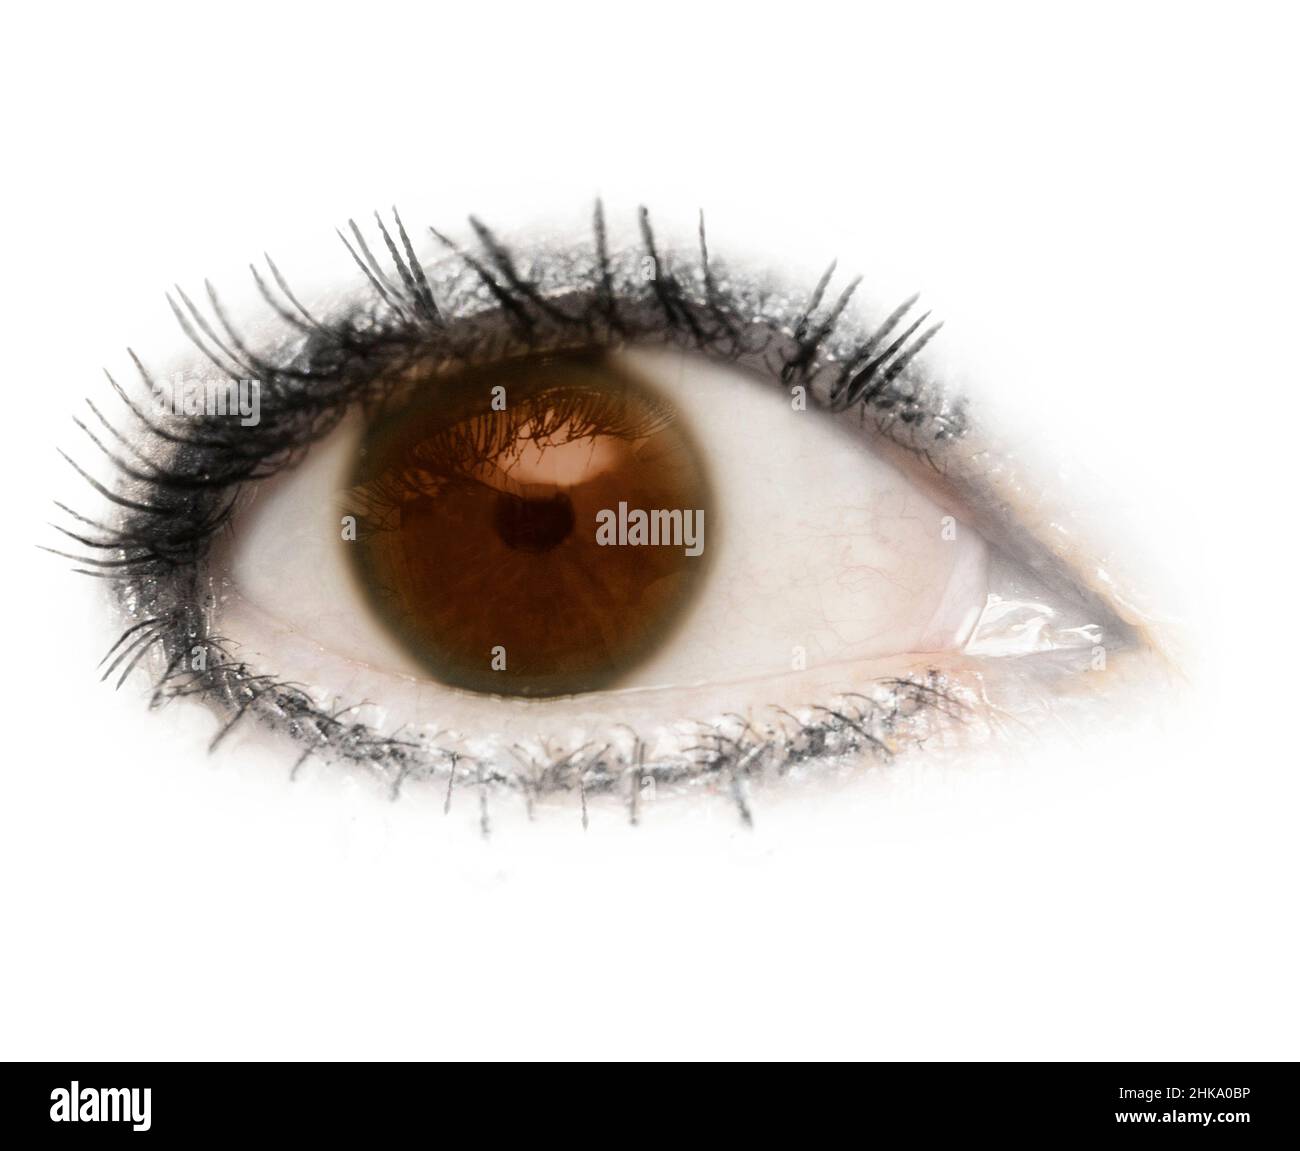 Ein Auge, Augapfel, braune, braune Augen, isoliert mit Wimpern Wimpern auf weißem Hintergrund. Augenlid, Pupille, Sclera, Iris. Stockfoto